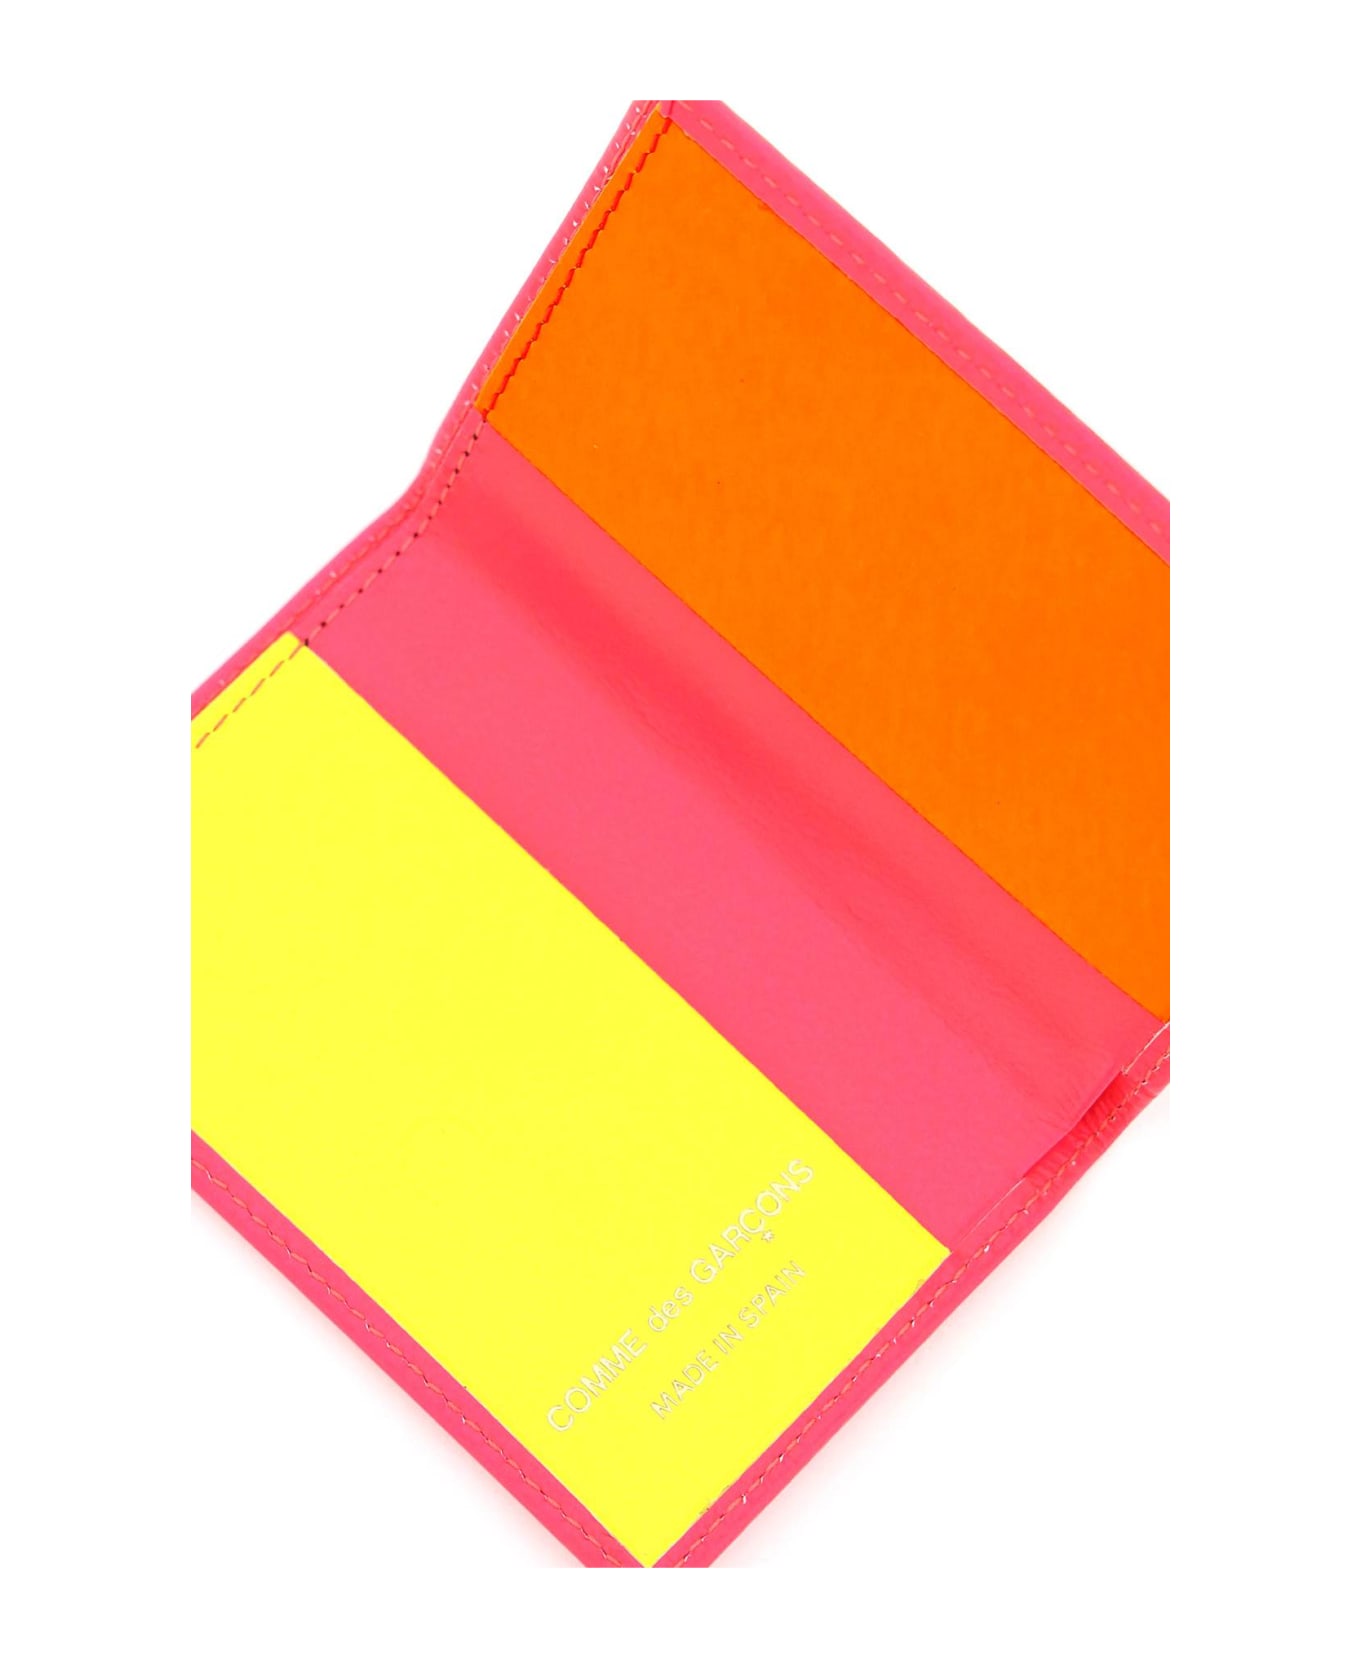 Comme des Garçons Wallet Super Fluo Wallet - PINK (Orange)